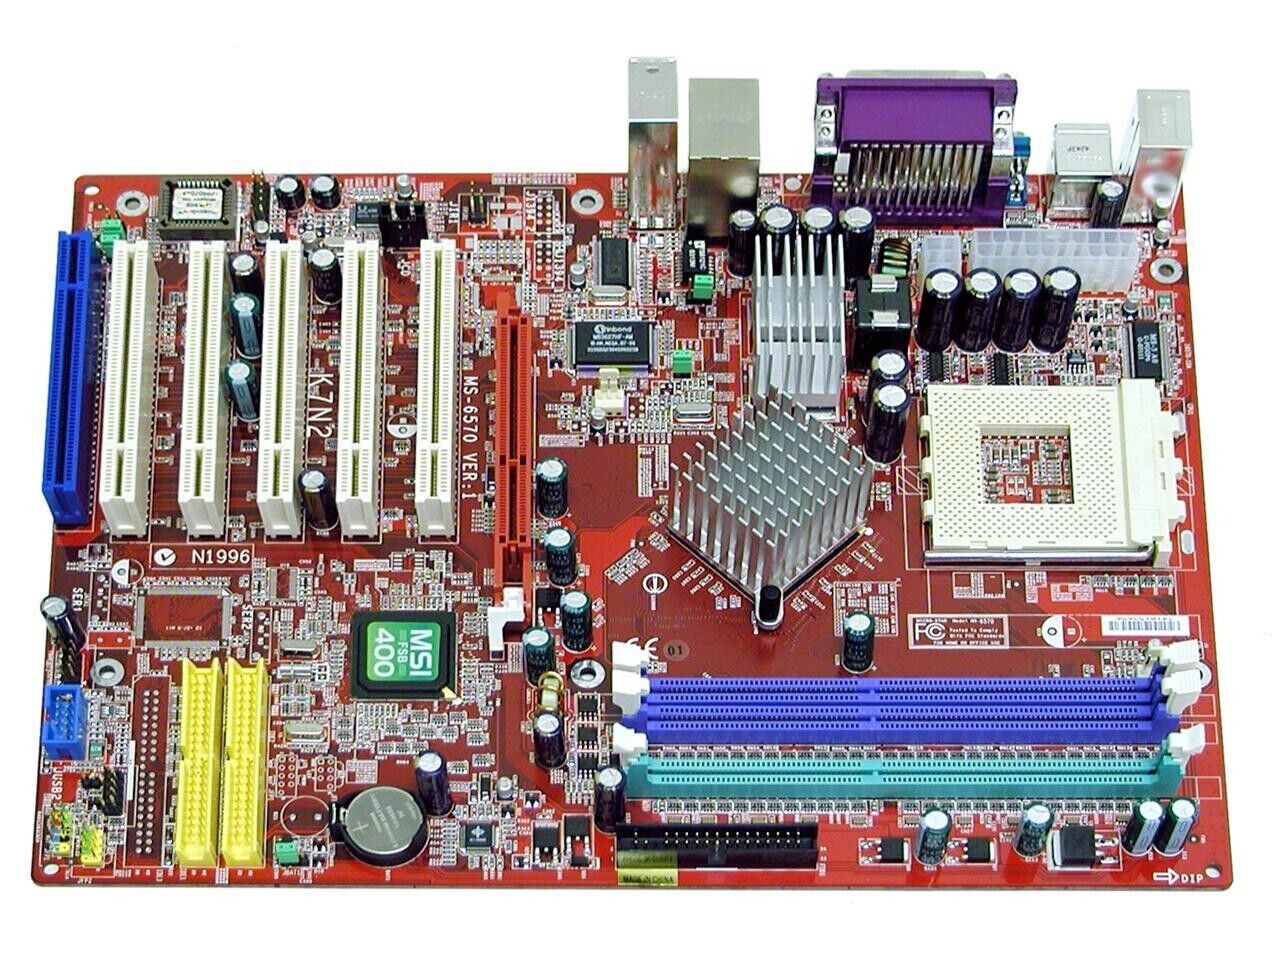 MSI K7N2 Delta-L 462(A XP3200 2.2GHz DDR 400 3GB Maxtor 2X120GB 7200RPM